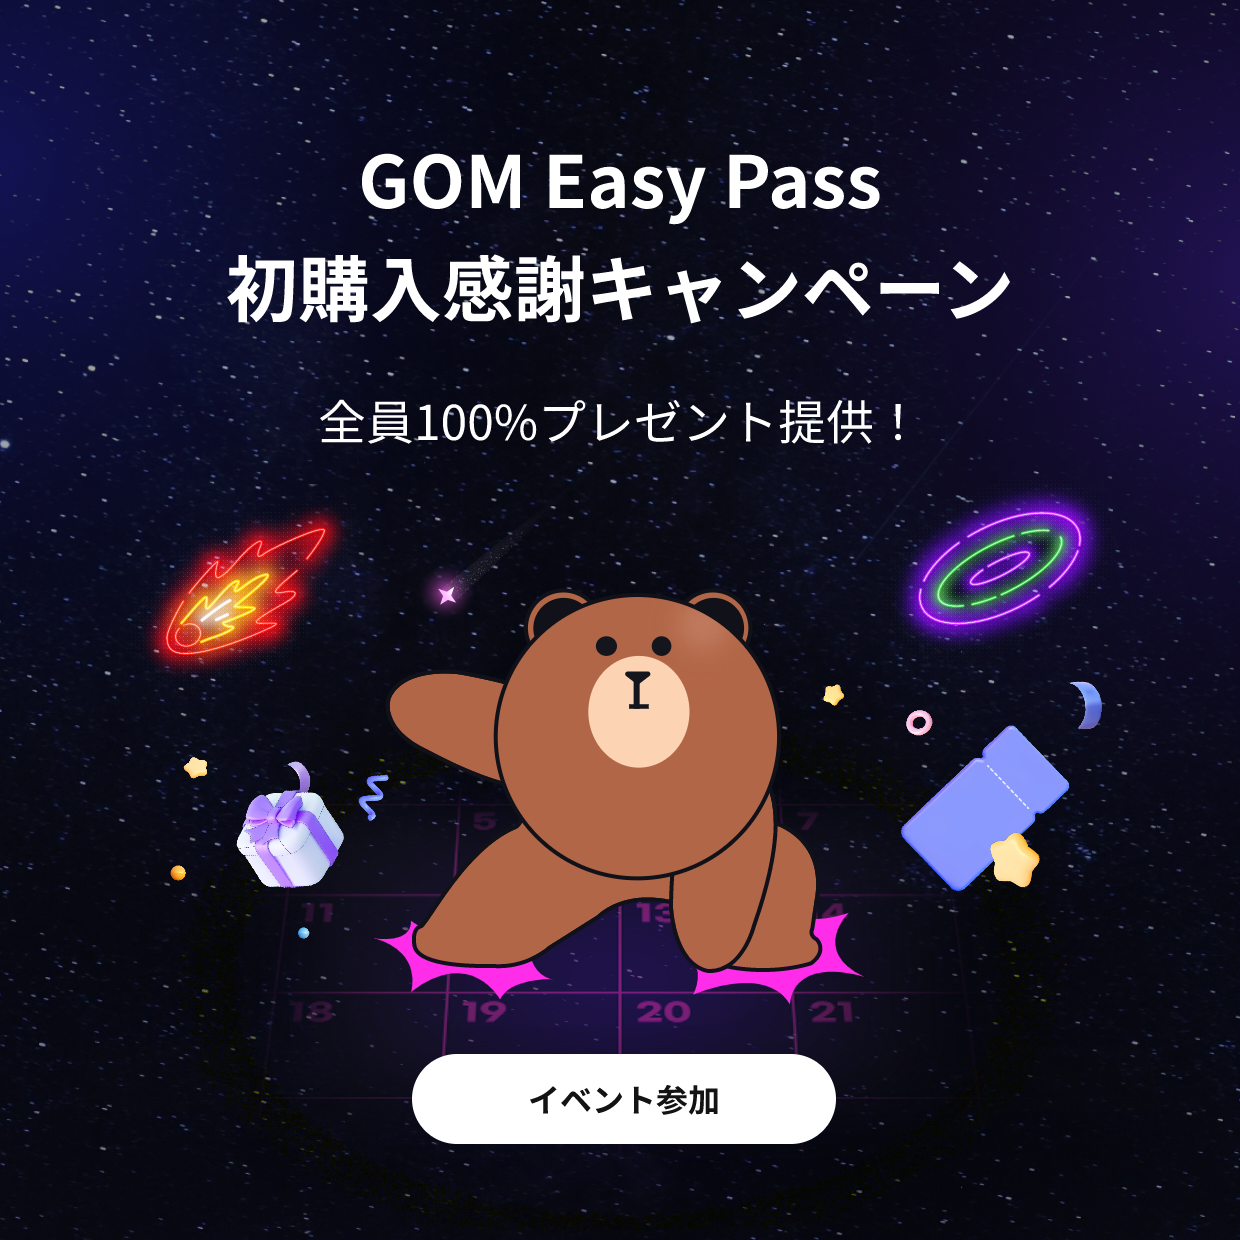 GOM Easy Pass 初購入感謝キャンペーン全員100%プレゼント提供！イベント参加